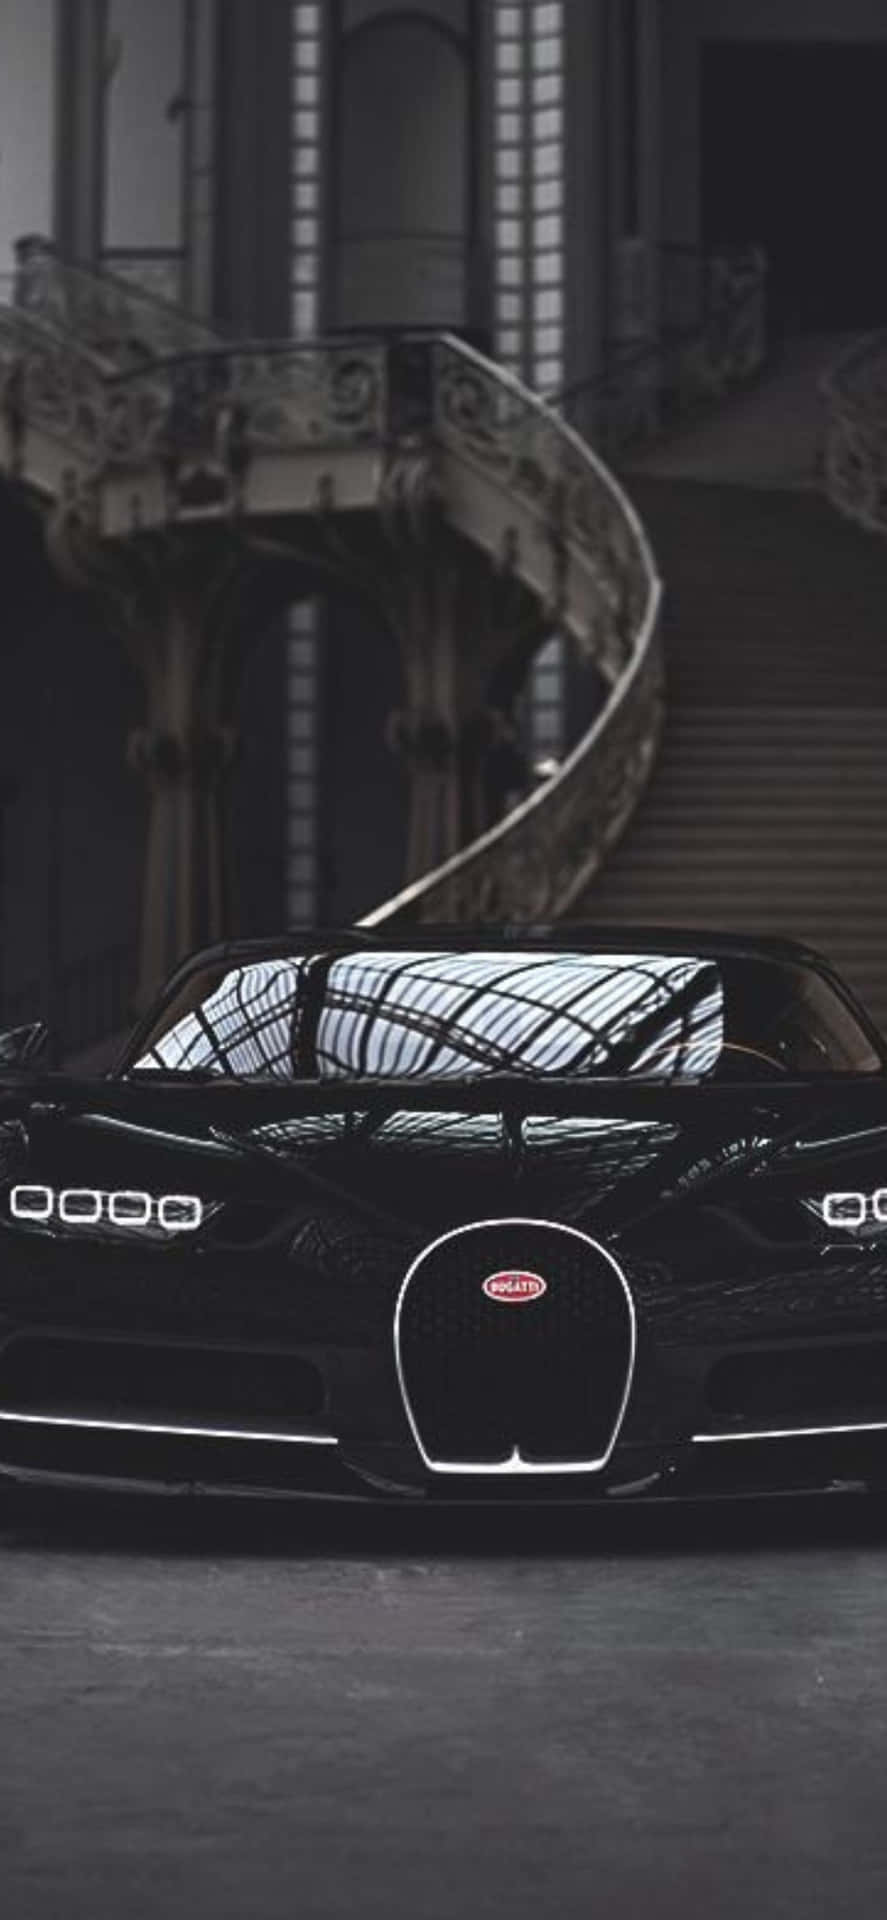 Ellujo Y Estilo Del Iphone Xs Bugatti De Apple